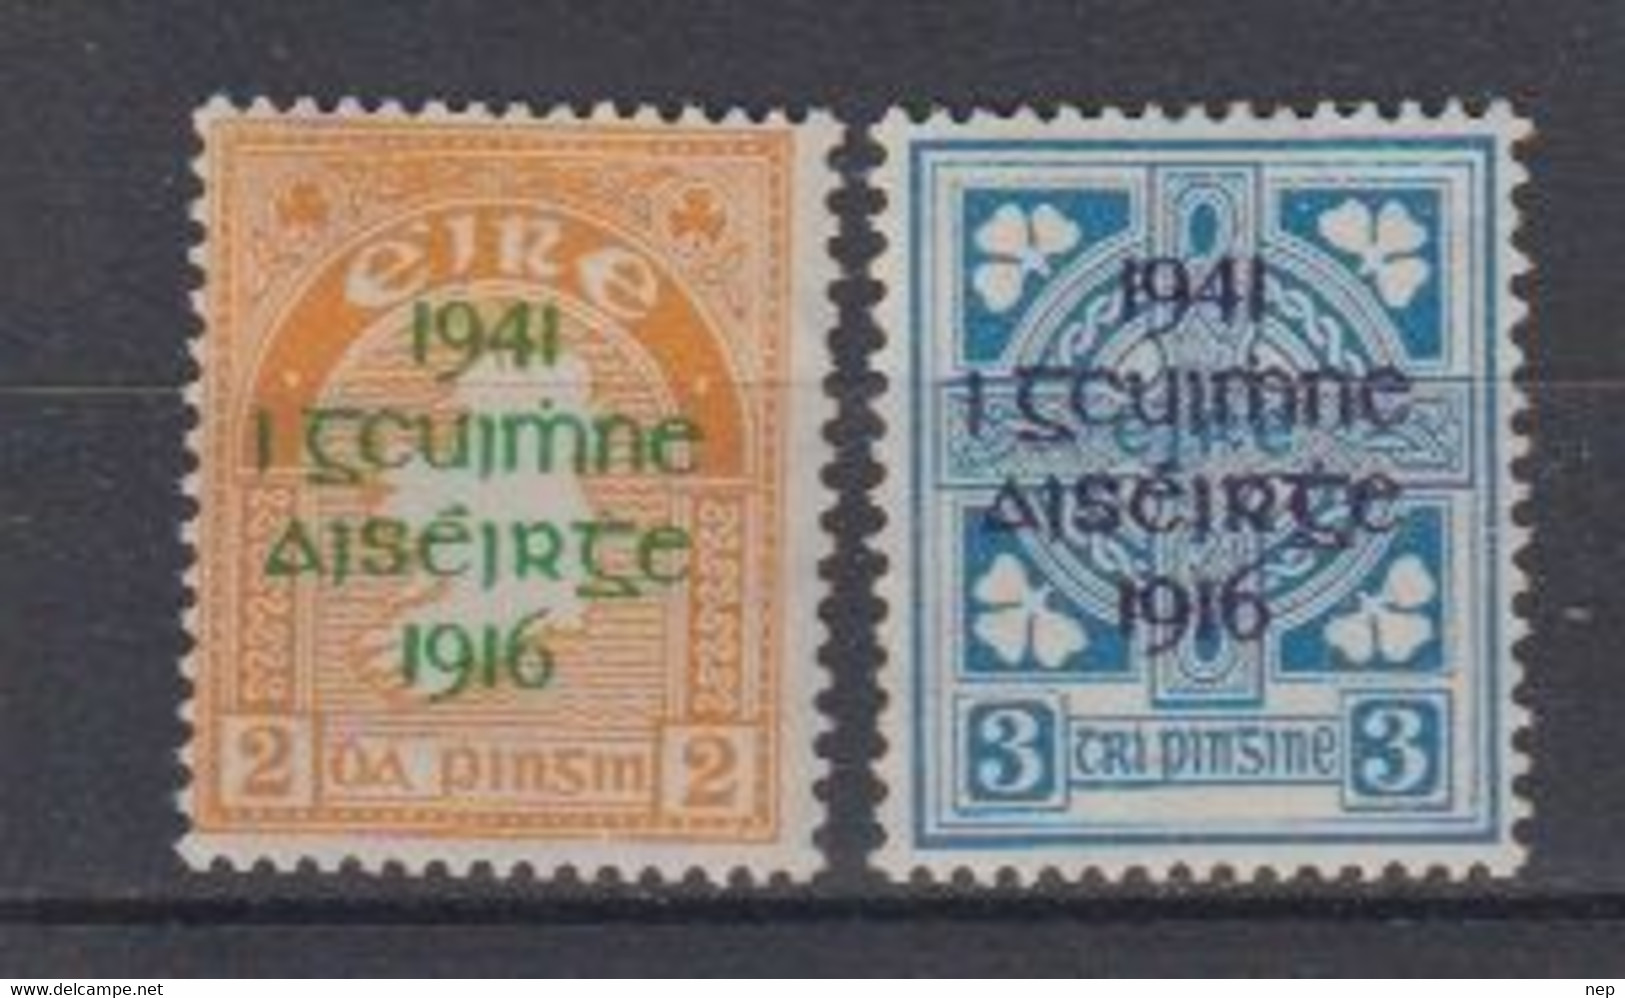 IERLAND - Michel - 1941 - Nr 83/84 (MOOI) - MH* - Unused Stamps